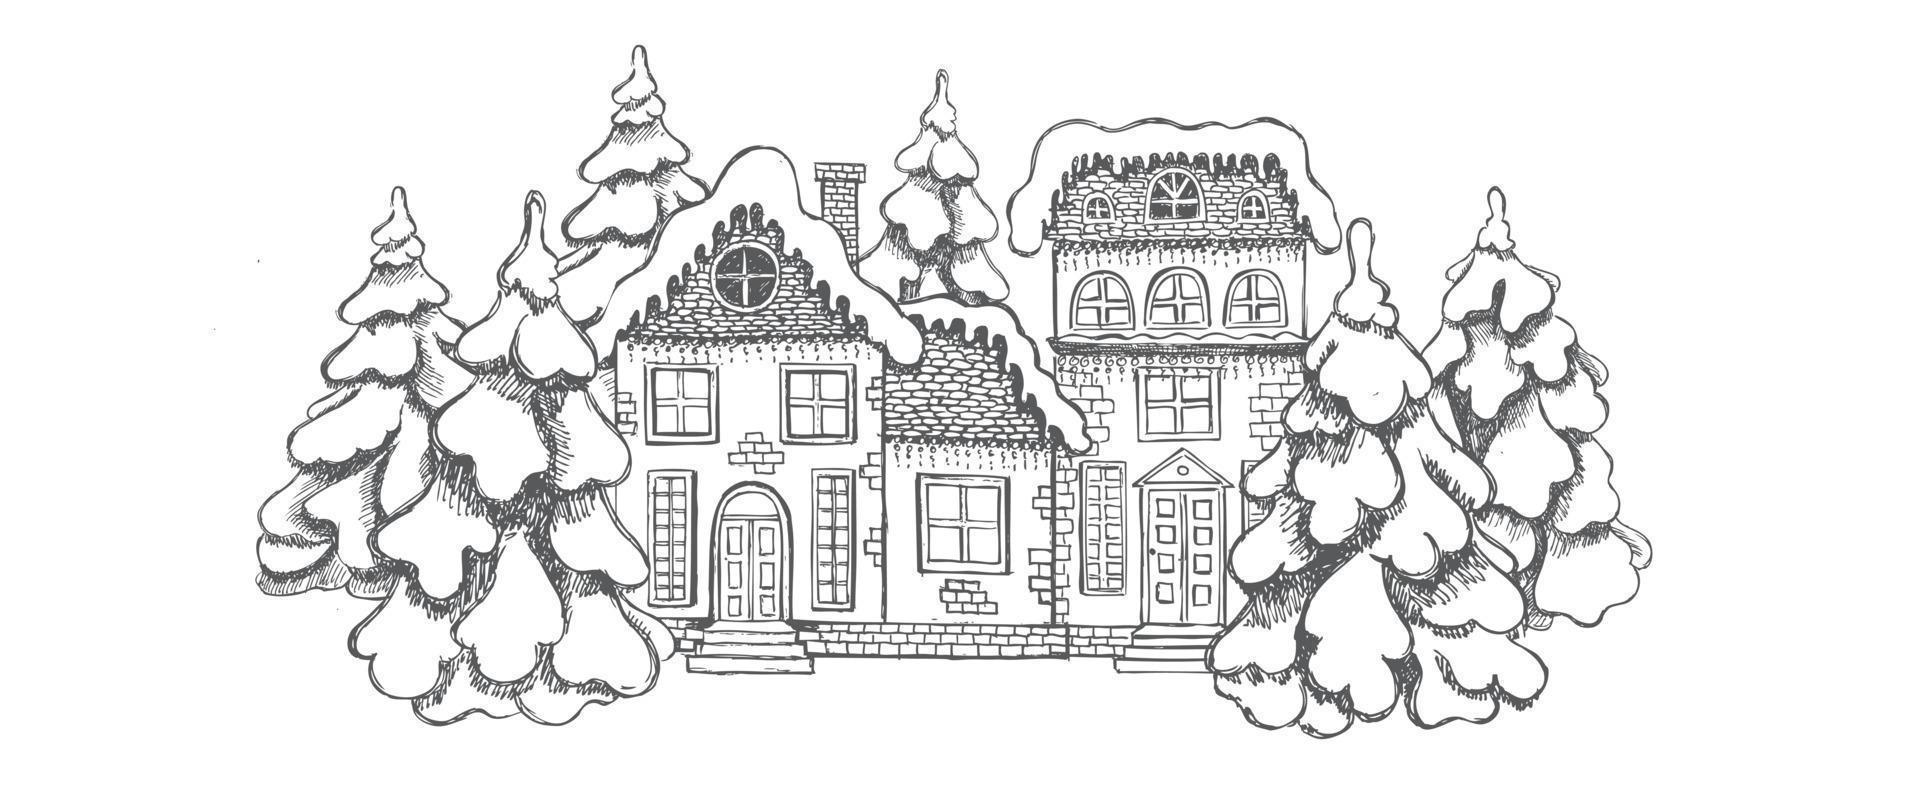 biglietto di auguri di natale. illustrazione di case. insieme di edifici disegnati a mano. vettore